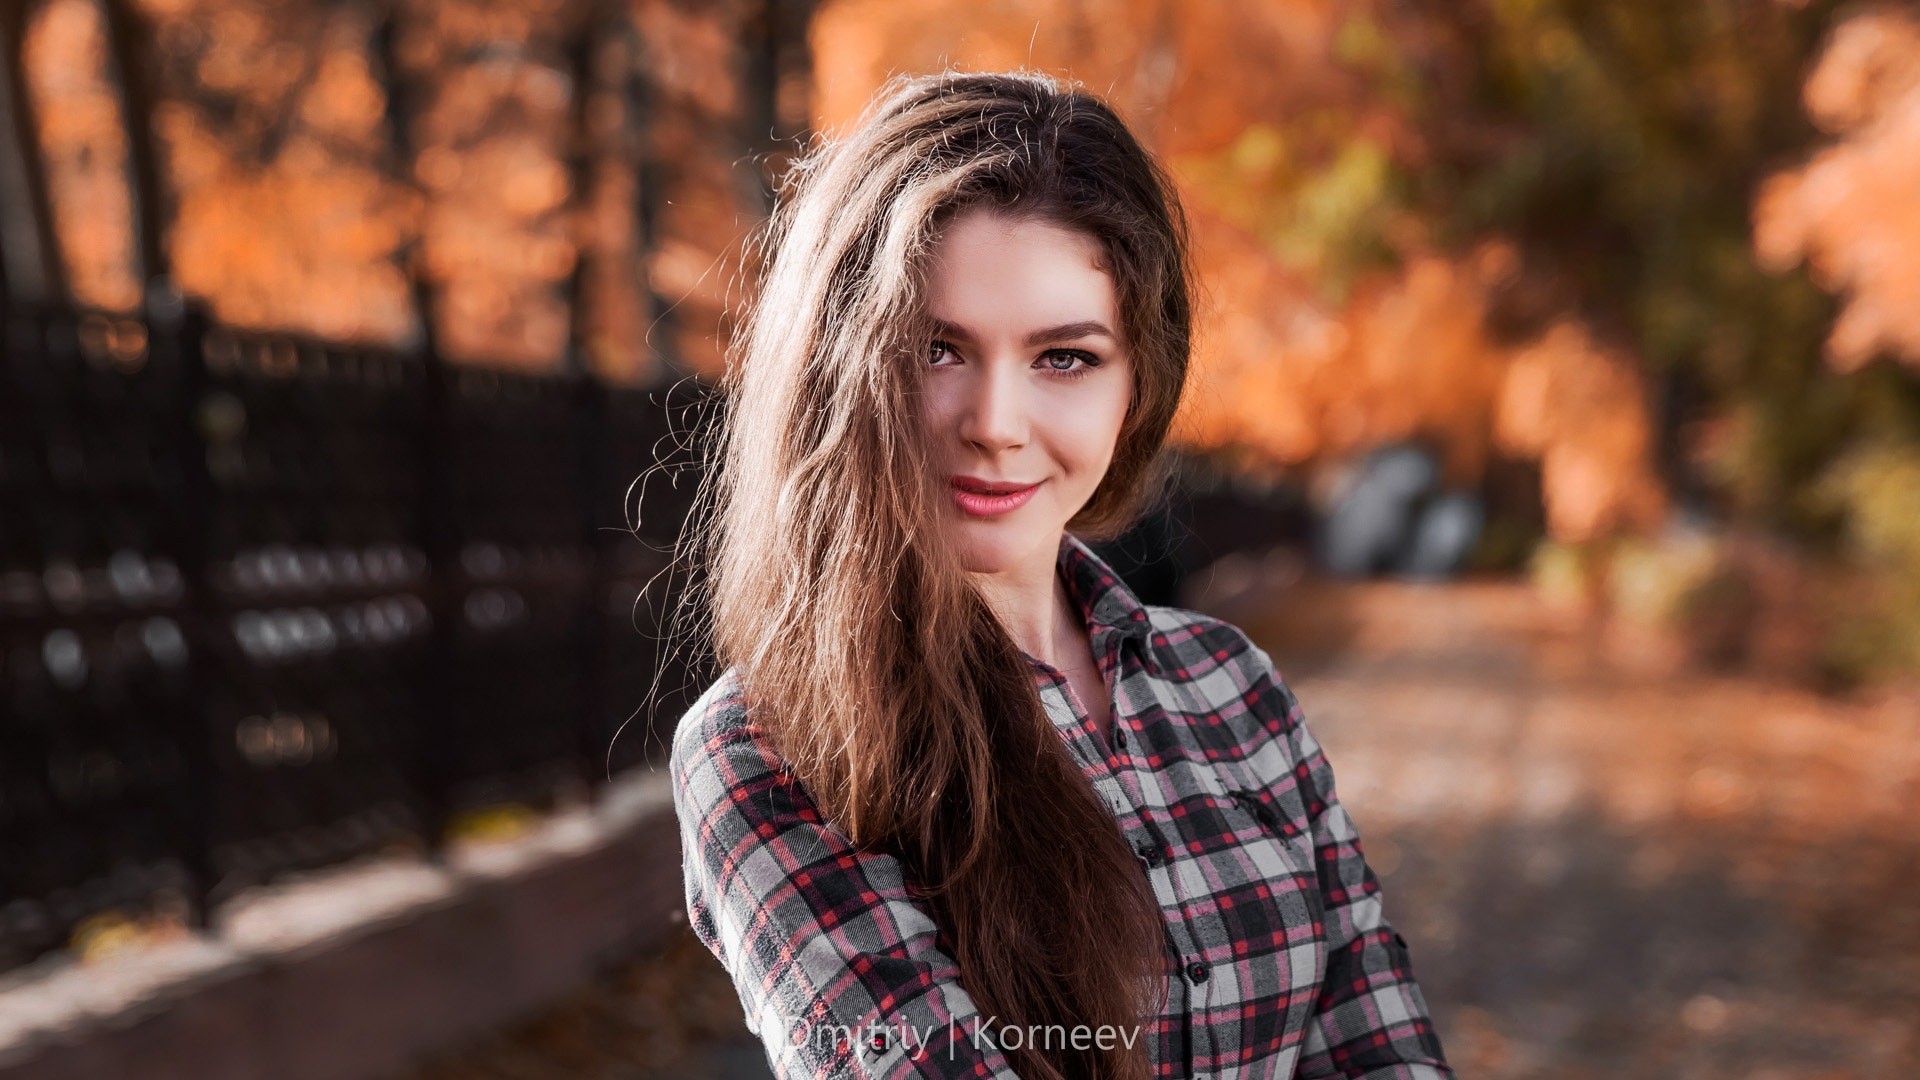 Dmitriy Korneev Women Long Hair Brunette Model Face Portrait Depth Of Field Looking At Viewer